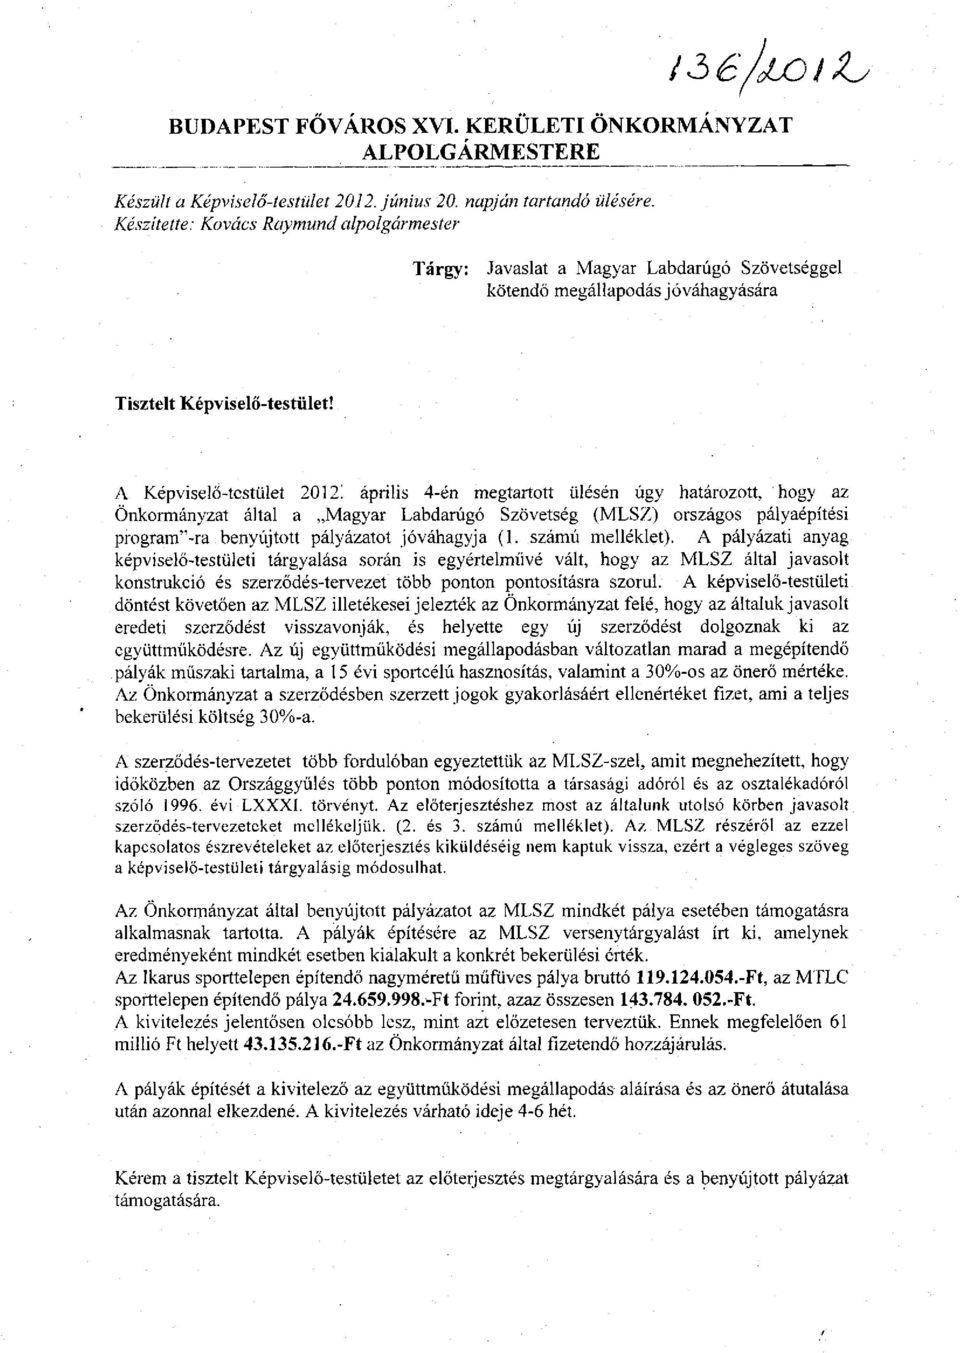 A Képviselő-testület 20121 április 4-én megtartott ülésén úgy határozott, hogy az Önkormányzat által a Magyar Labdarúgó Szövetség (MLSZ) országos pályaépítési program"-ra benyújtott pályázatot